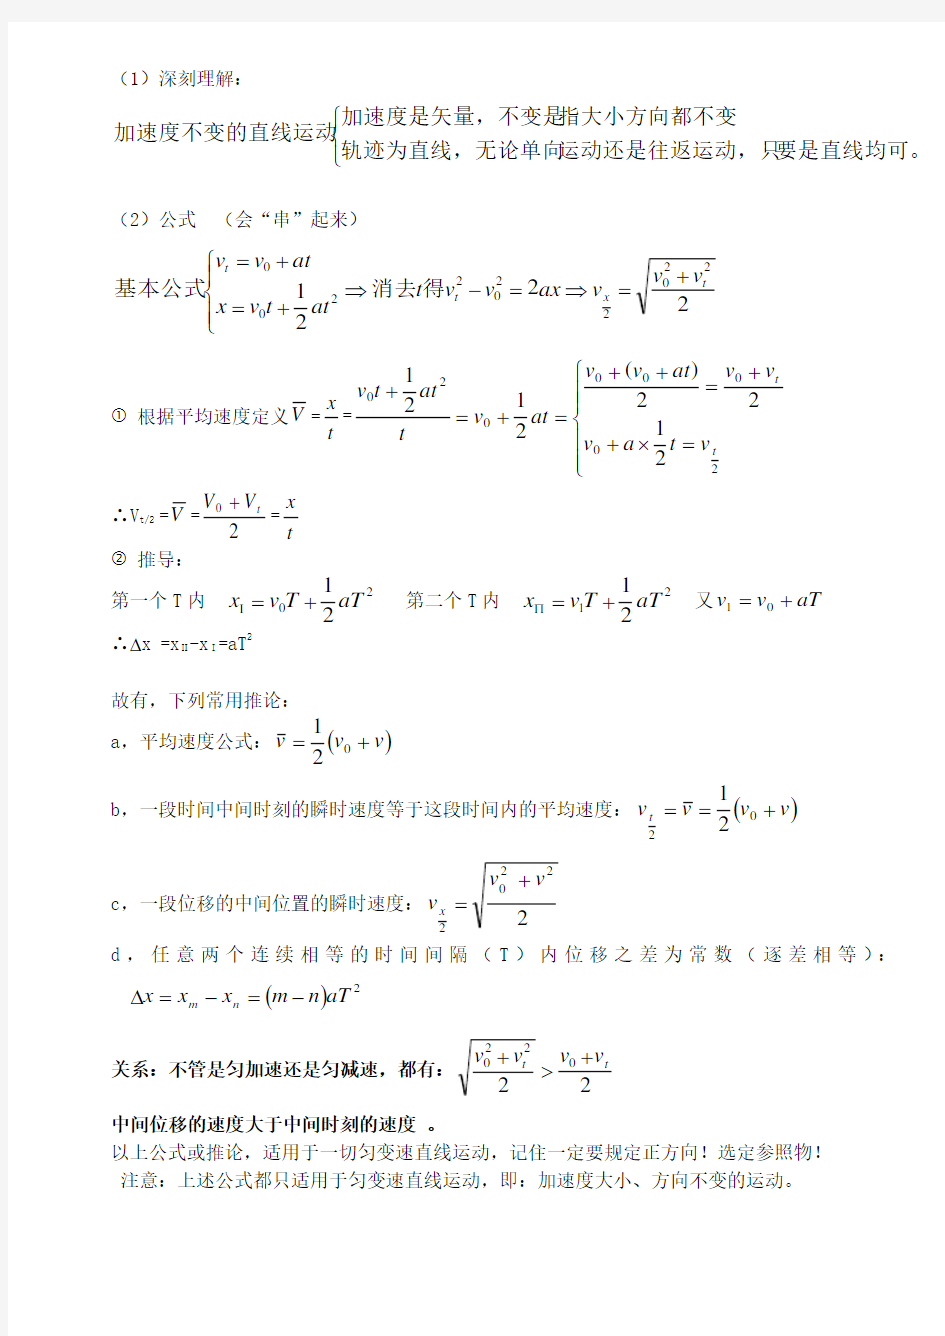 高一物理运动学公式整理(打印部分)